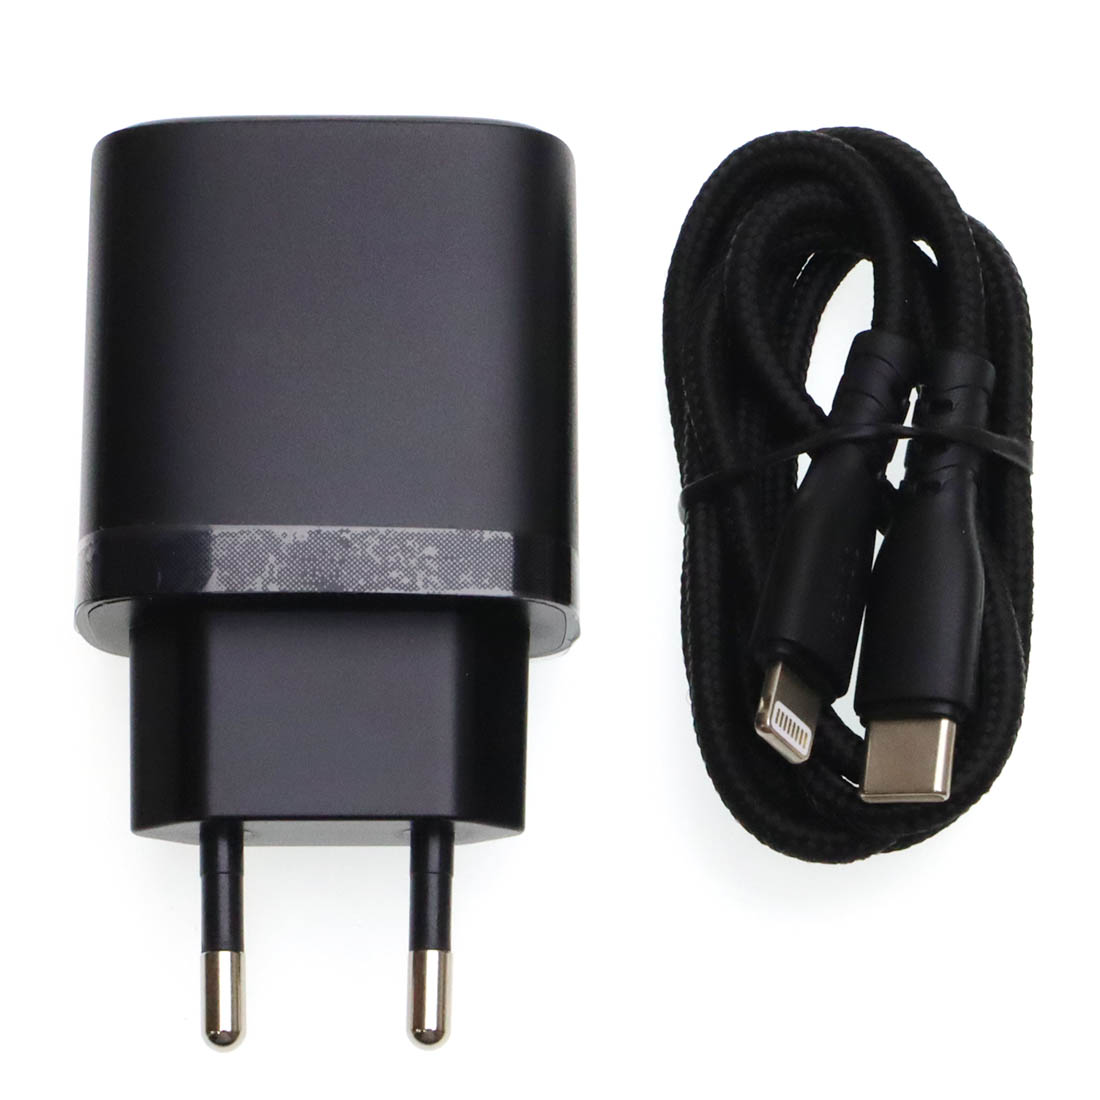 СЗУ (Сетевое зарядное устройство) YESIDO YC54 с кабелем USB Type C на Lightning 8 pin, 20W, 2 USB Type C, длина 1 метр, цвет черный